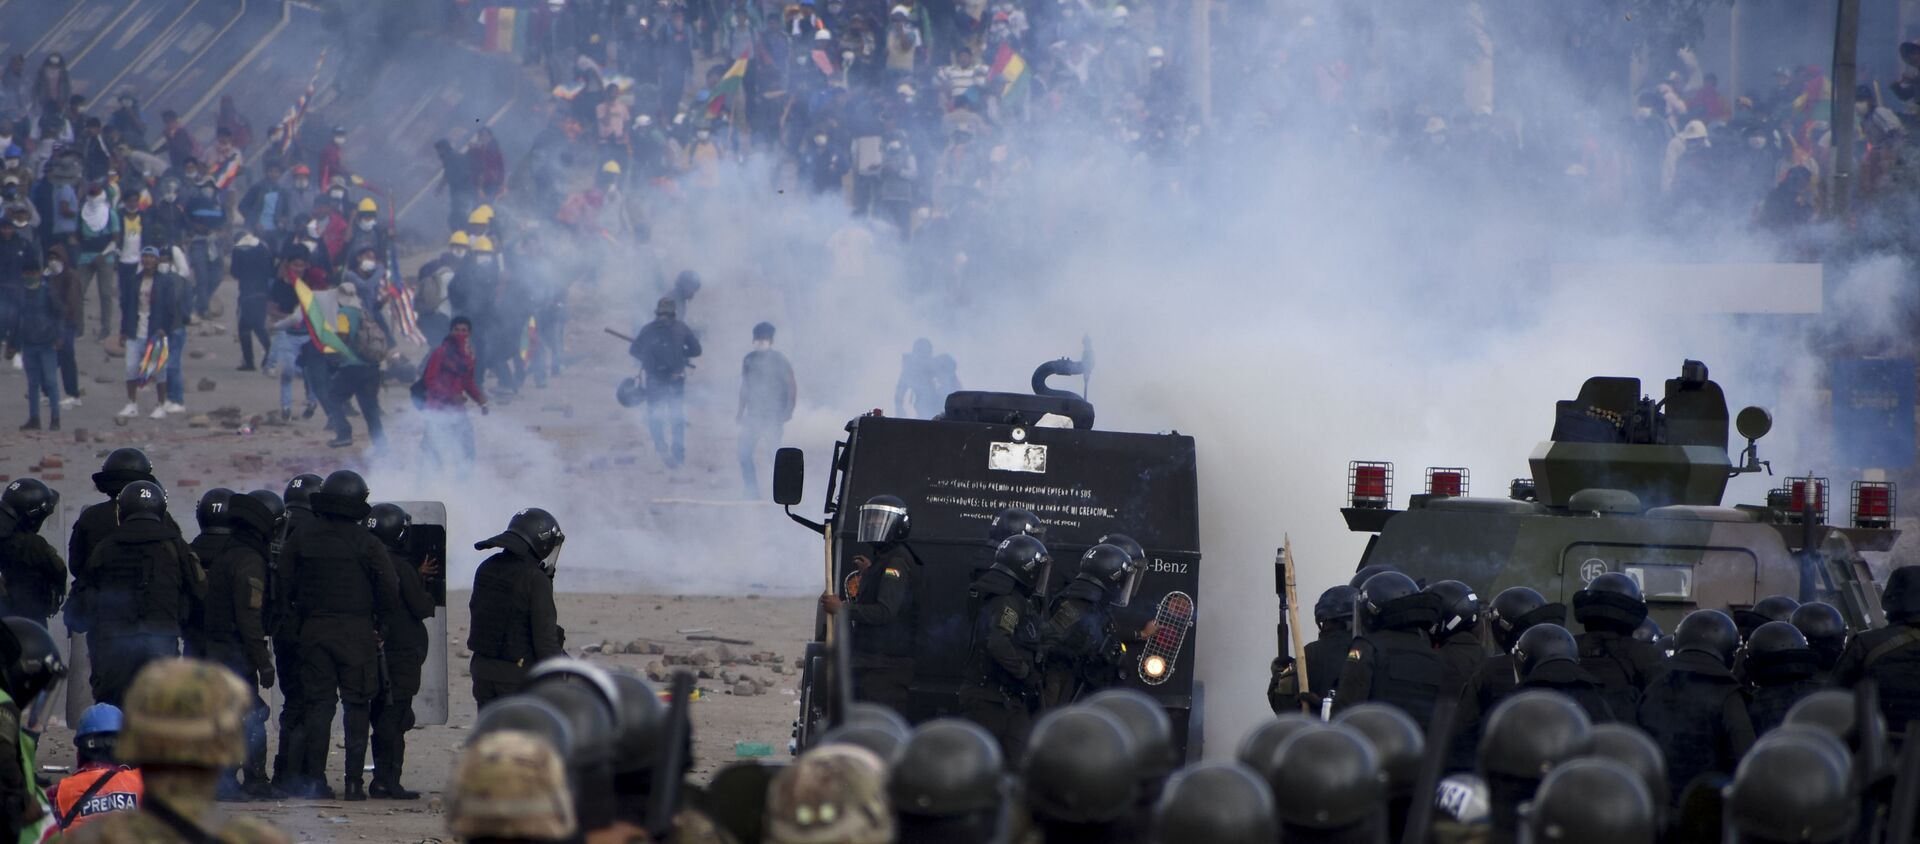 Снаге безбедности током сукоба са демонстрантима, присталицама бившег боливијског председника Ева Моралеса, у Сакаби у Боливији - Sputnik Србија, 1920, 29.11.2019